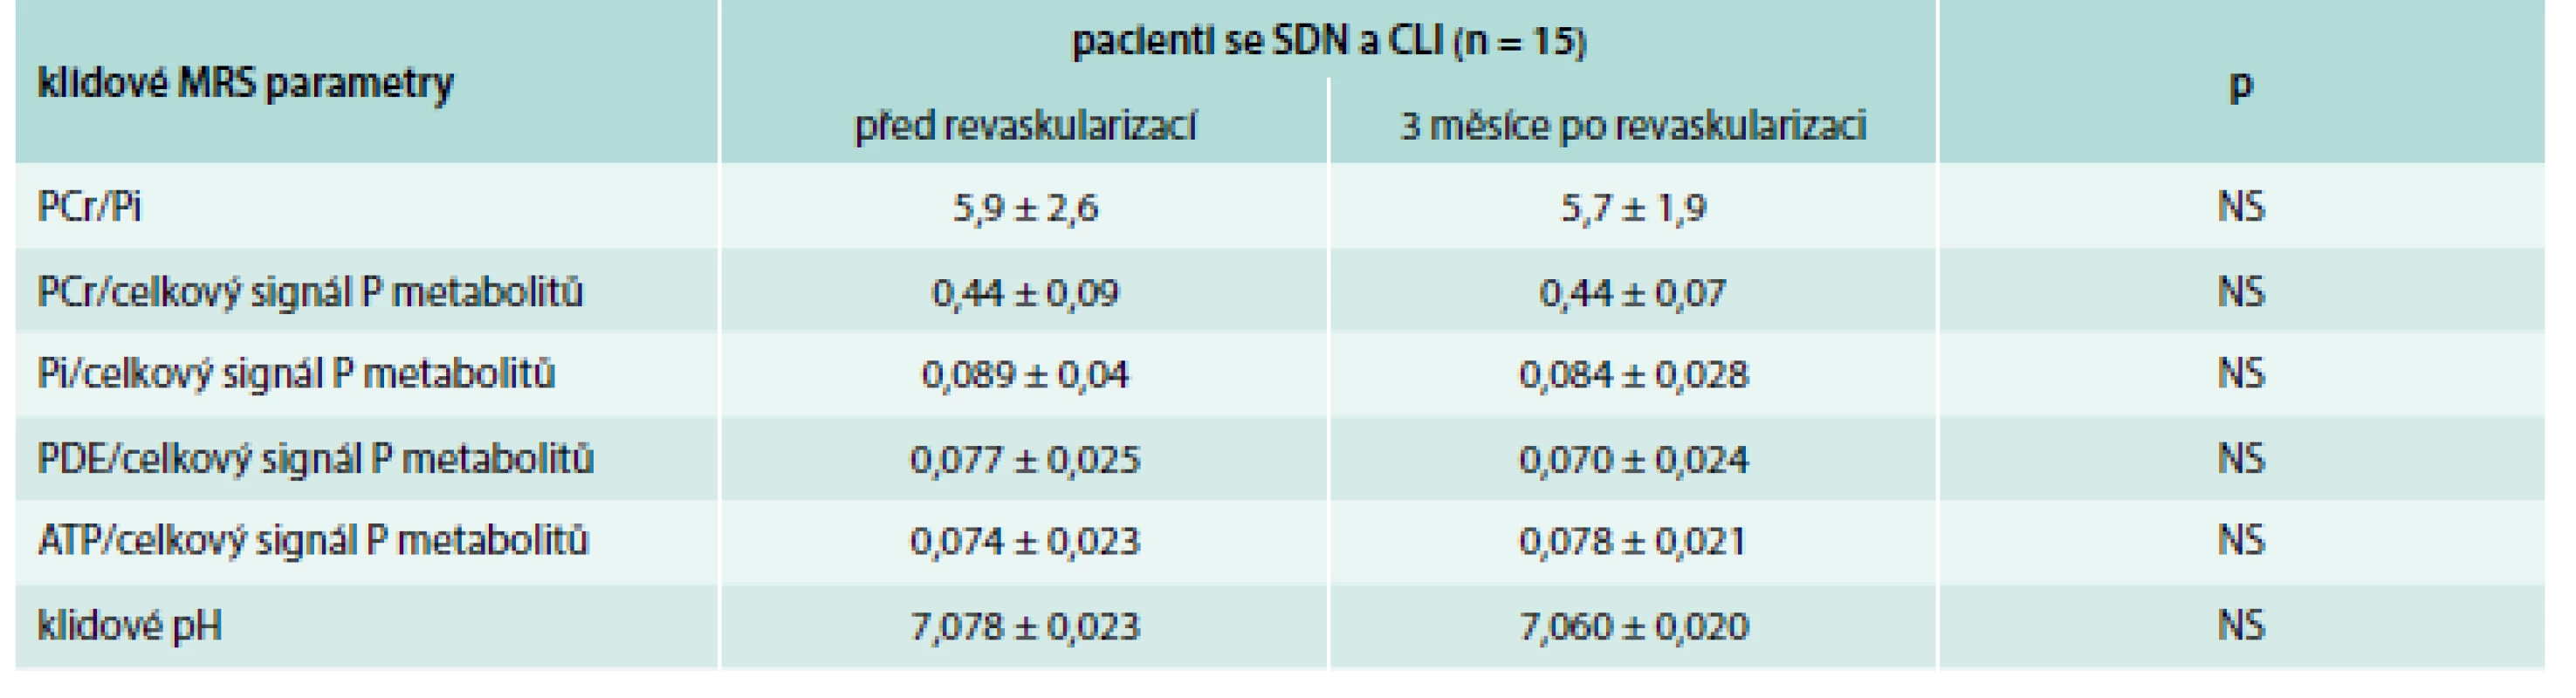 Porovnání parametrů MRS lýtkových svalů u pacientů se SDN a CLI před a po revaskularizaci